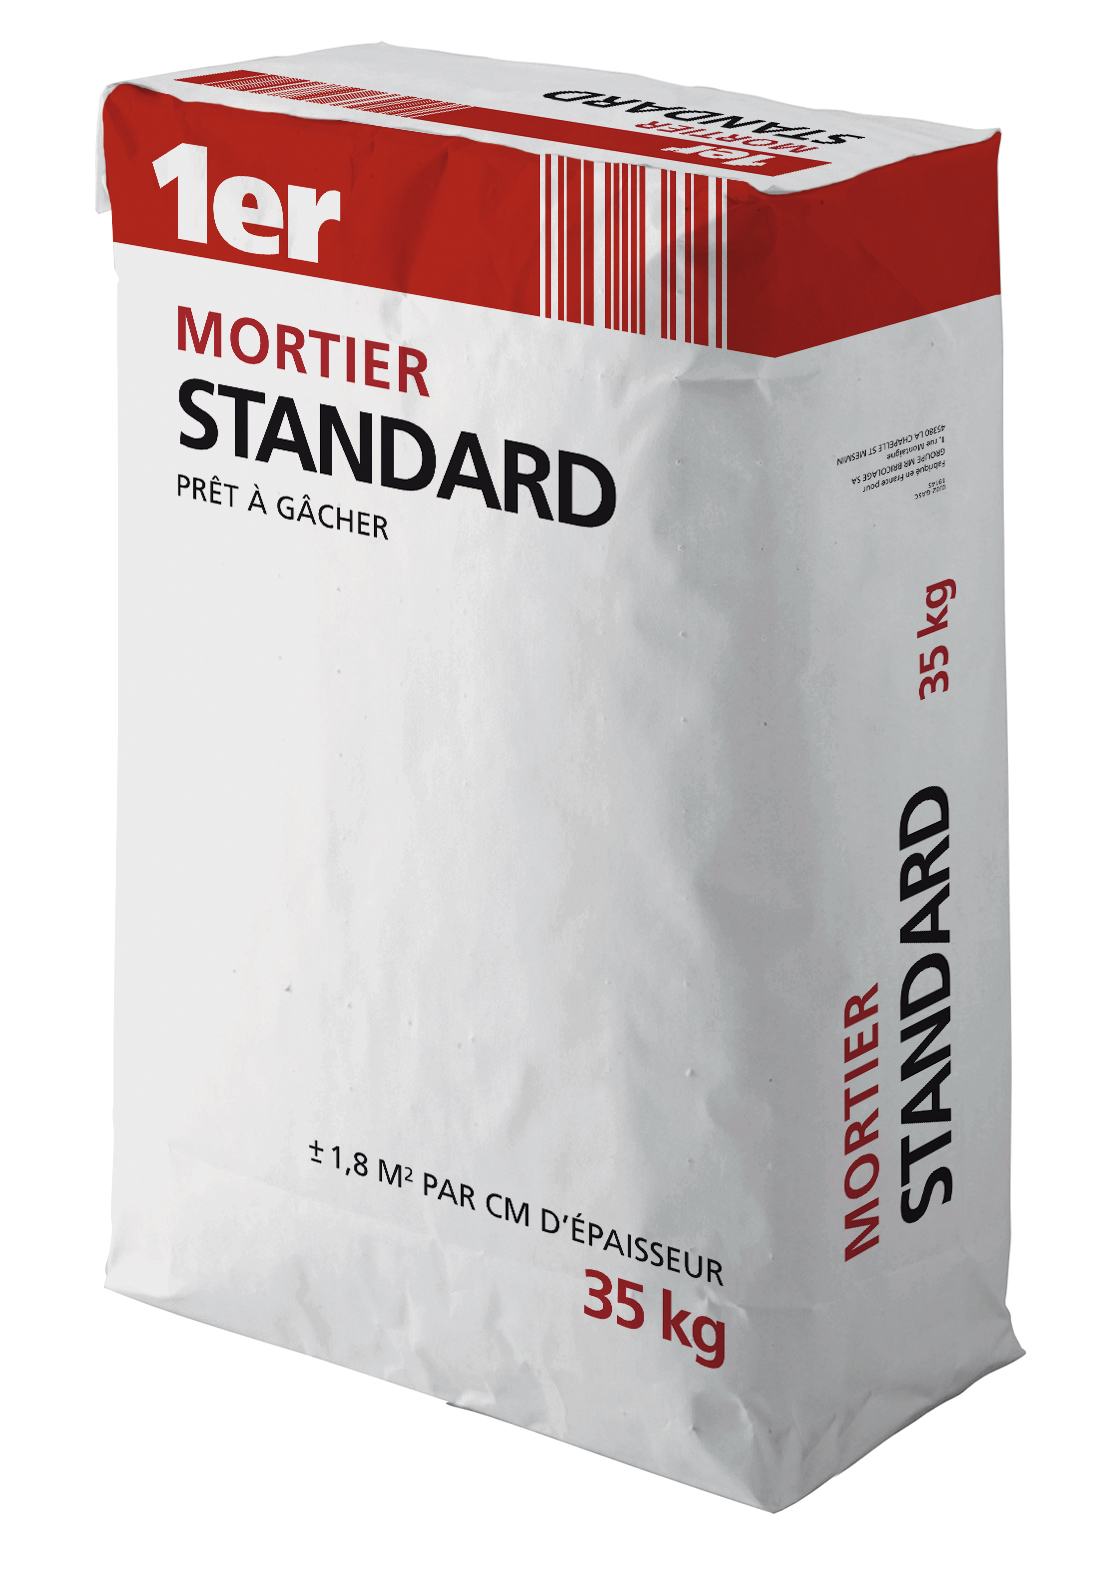 Mortier standard 35kg - 1ER